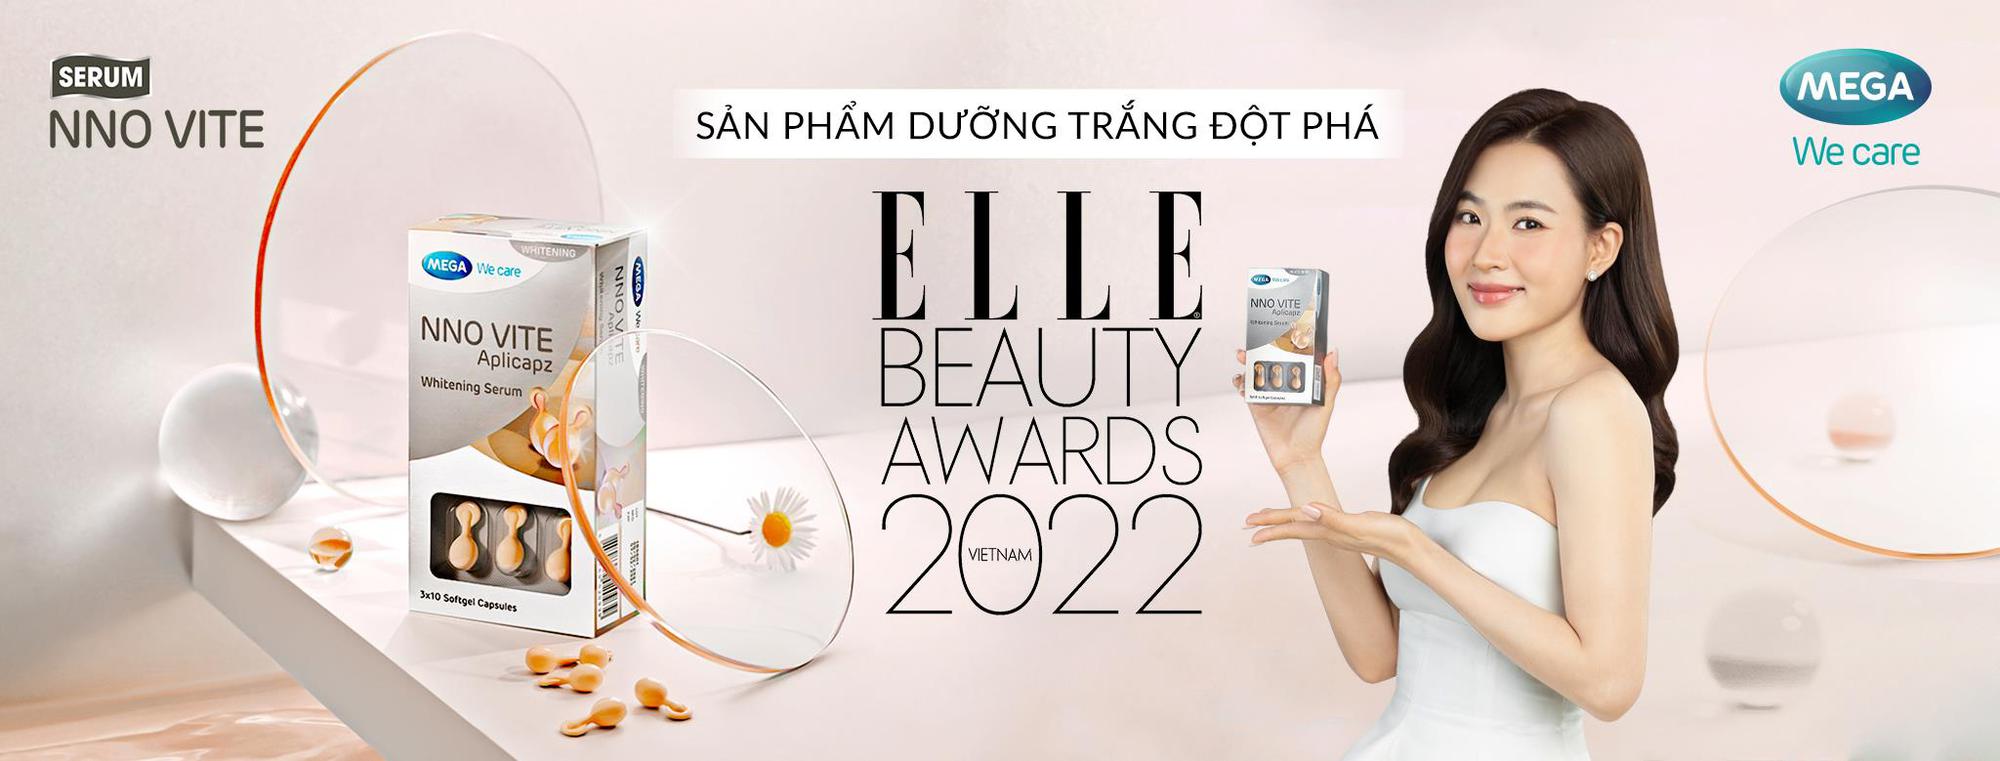 serum-duong-trang-nno-vite-elle-beauty-award-2022